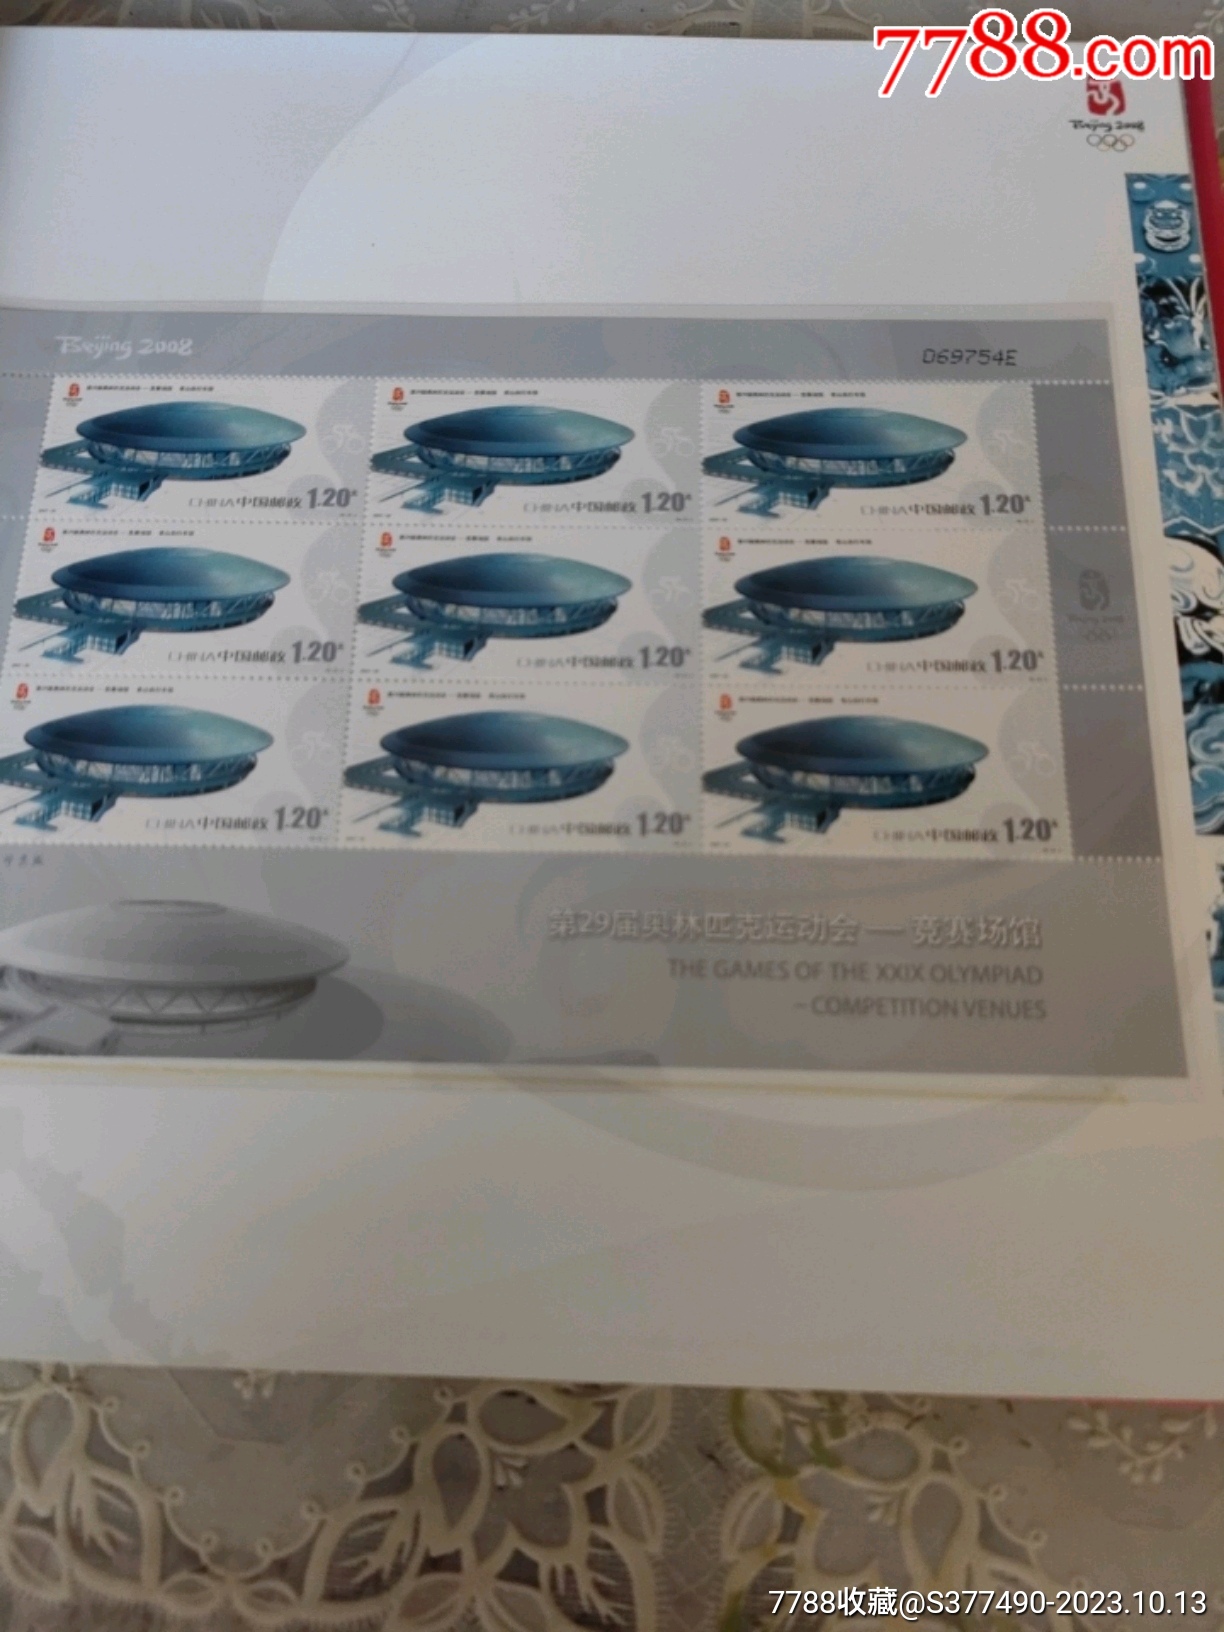 2008奧運會竟賽場館郵票小版張大全冊_價格276元_第11張_